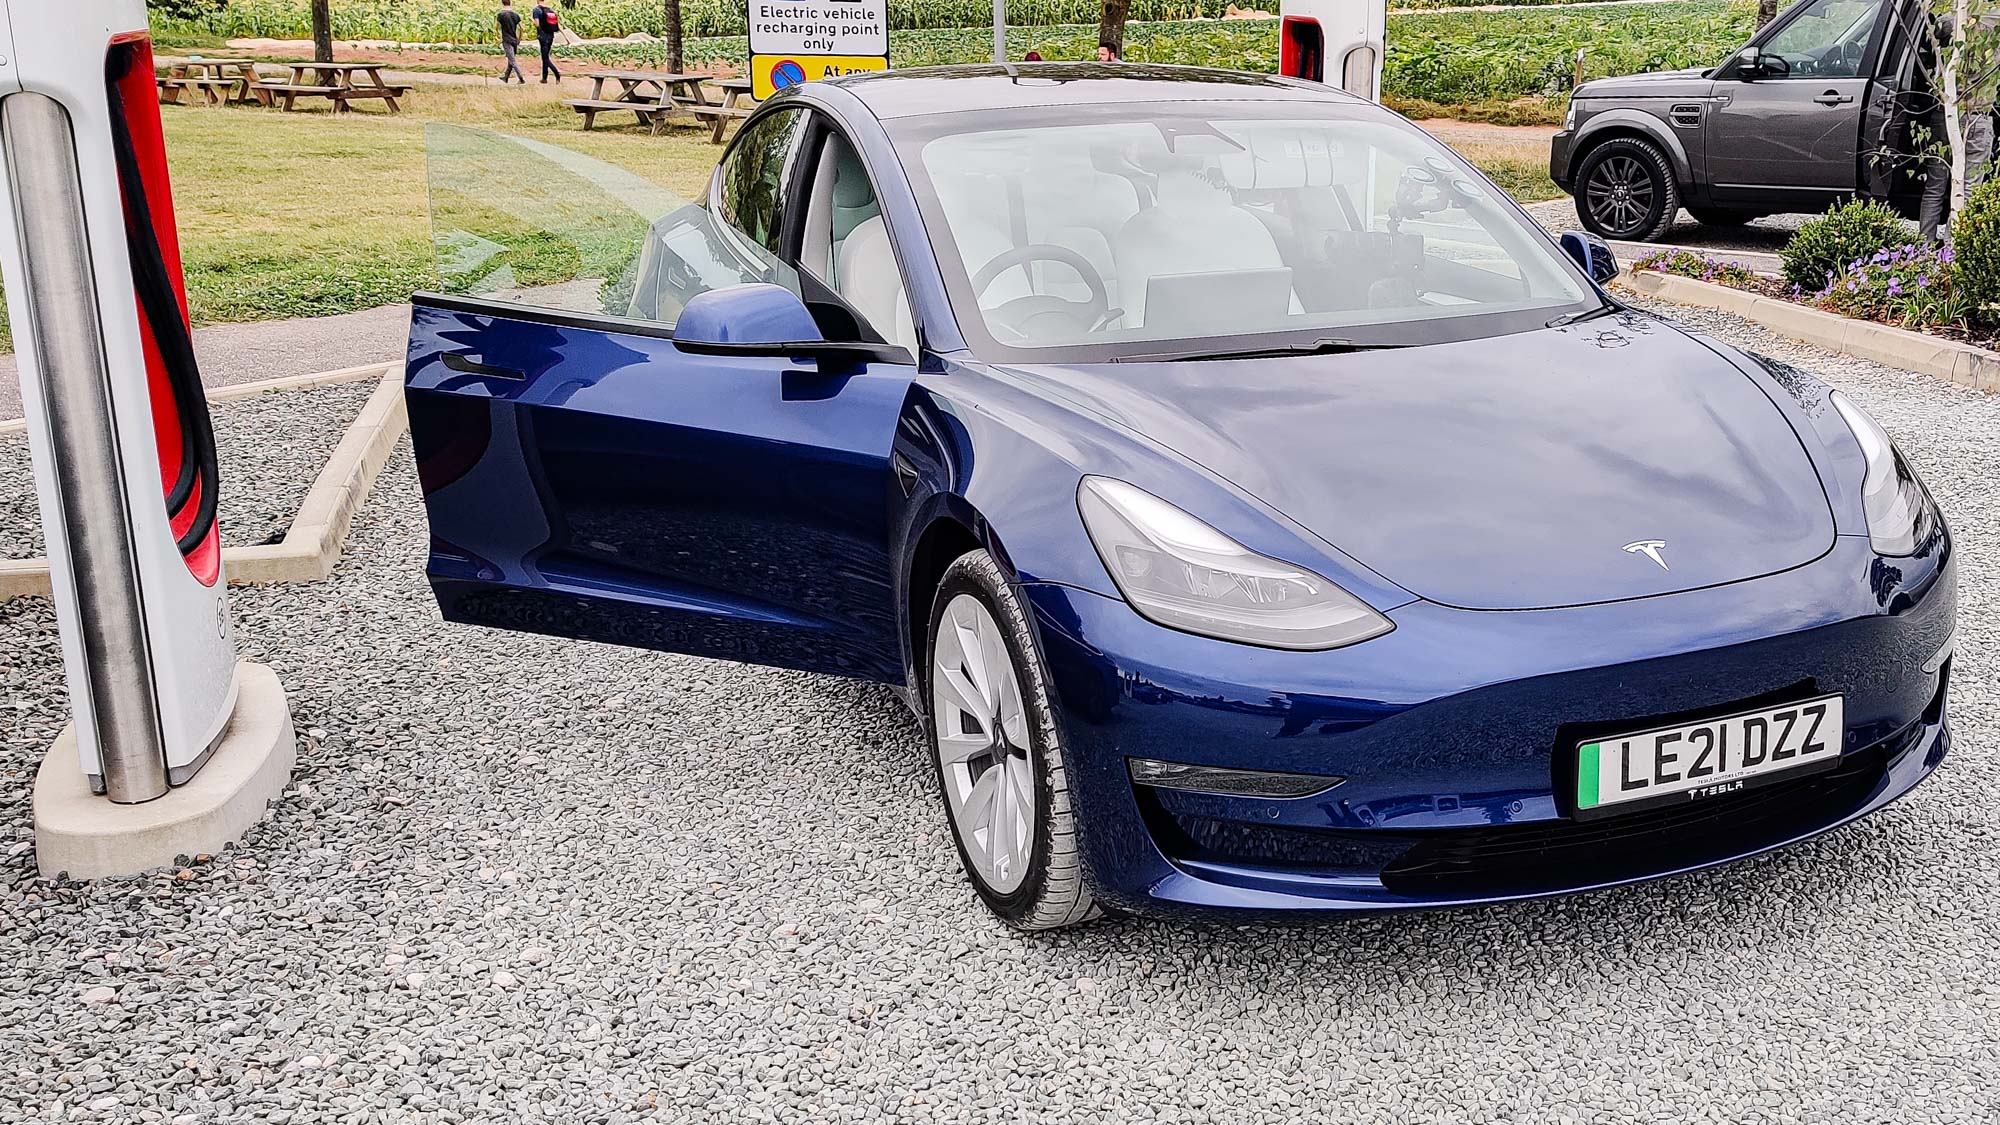 Tesla Model 3 parked at a charging station